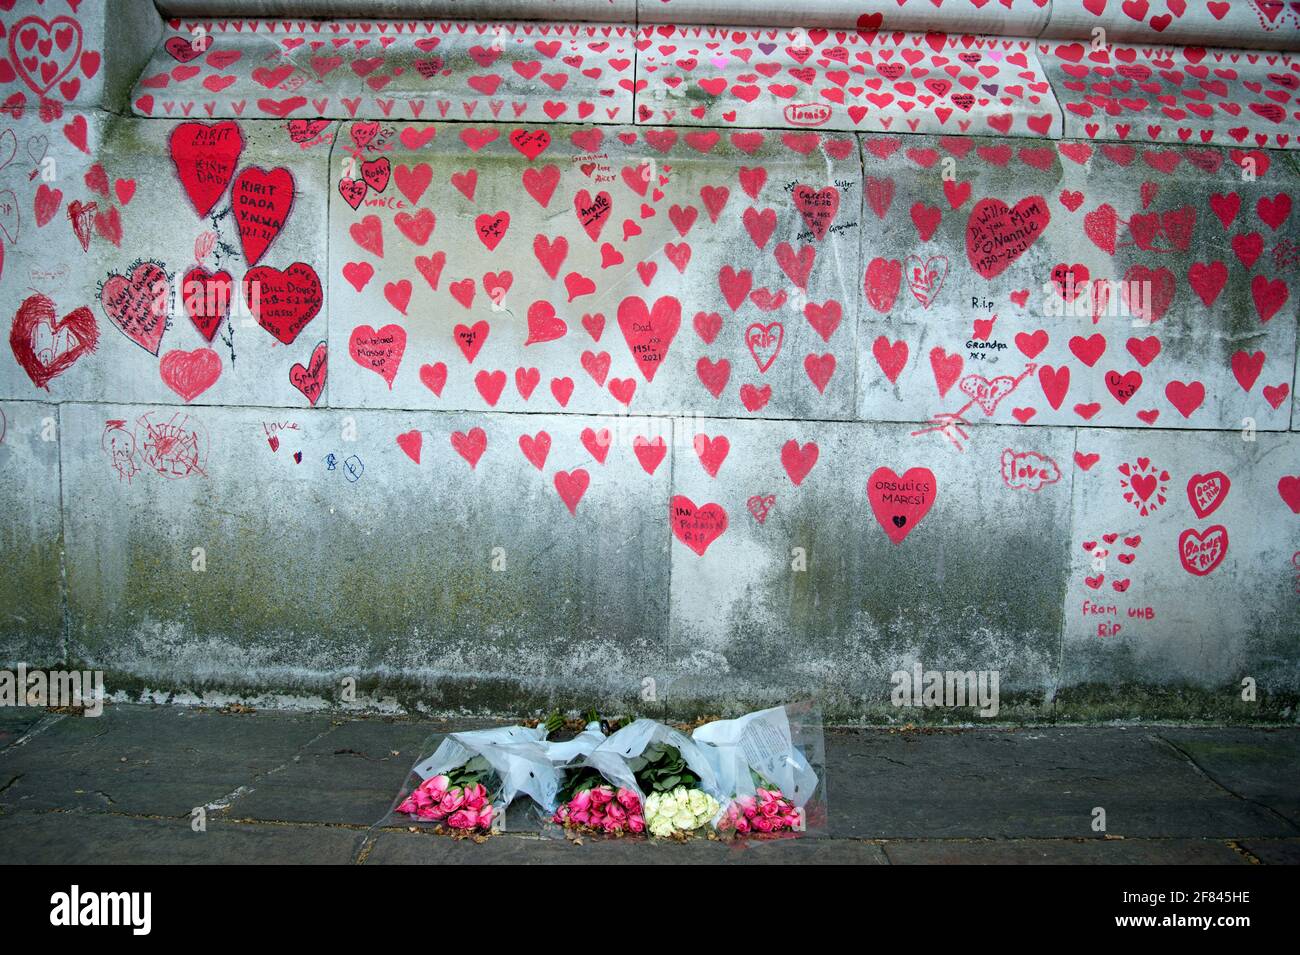 Southbank, Londra, Inghilterra, Regno Unito. National Covid Memorial Wall. Cuori rossi per commercare coloro che sono morti di Covid. Foto Stock